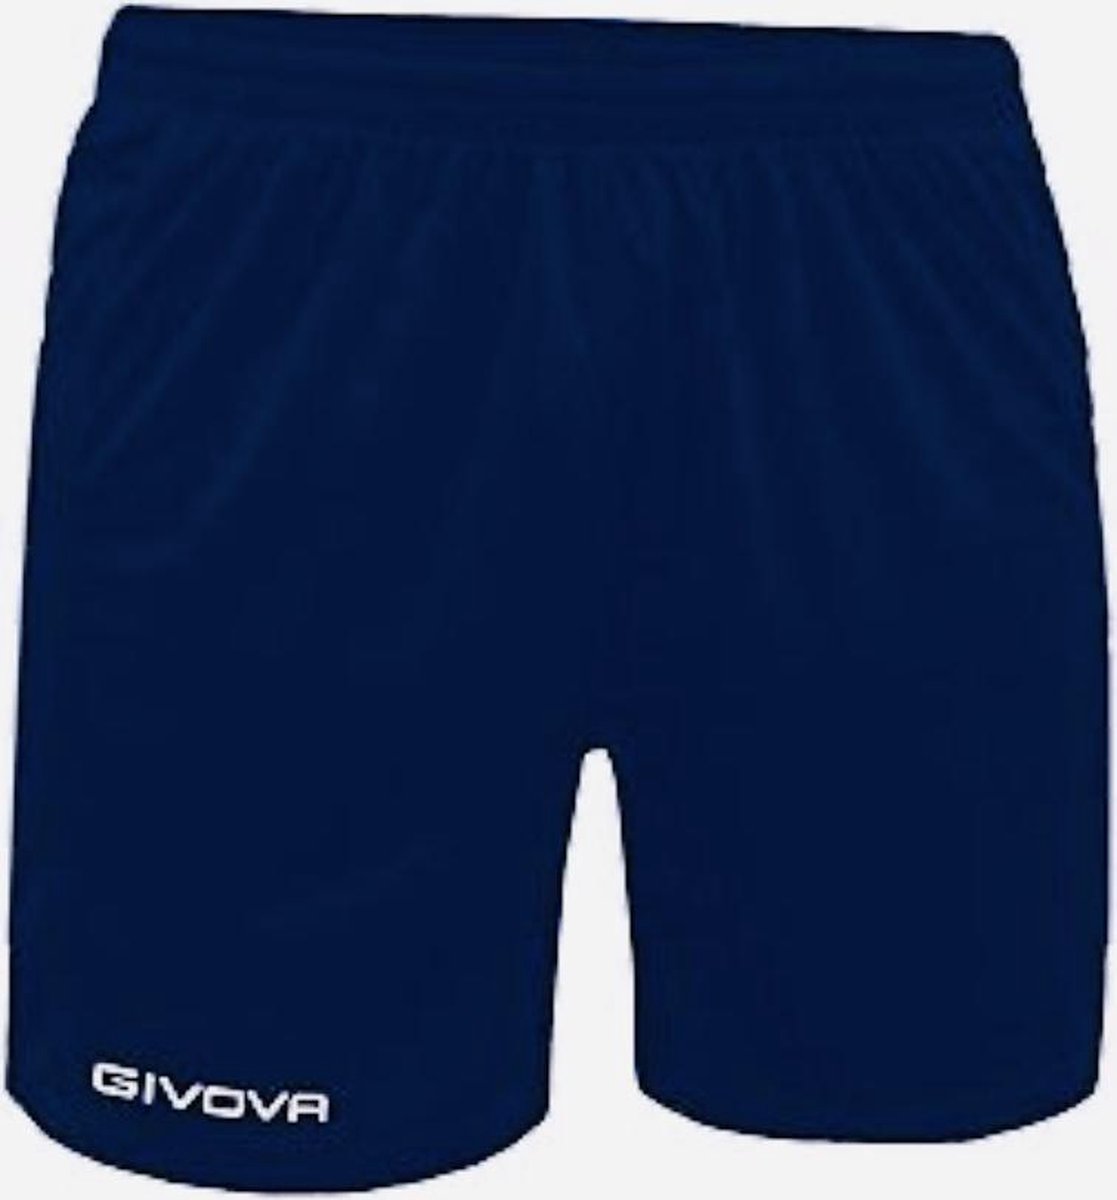 Short Panta Givova One P018, korte broek navy blauw, maat L, geborduurd logo !